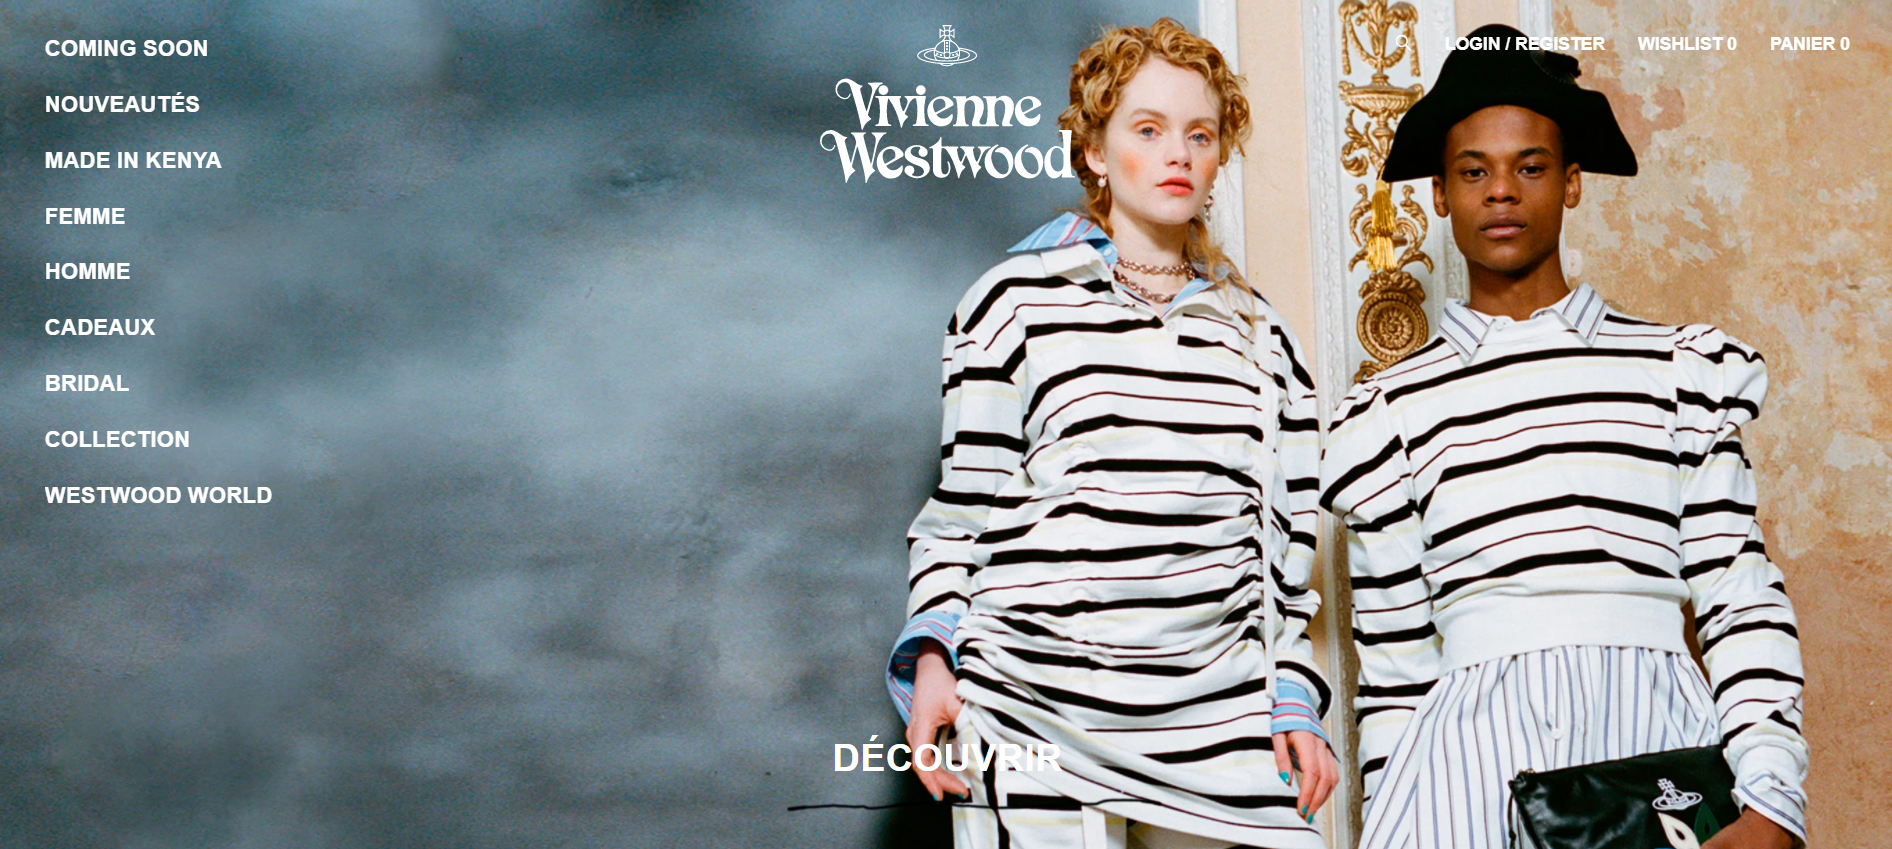 Vivienne-Westwood.png